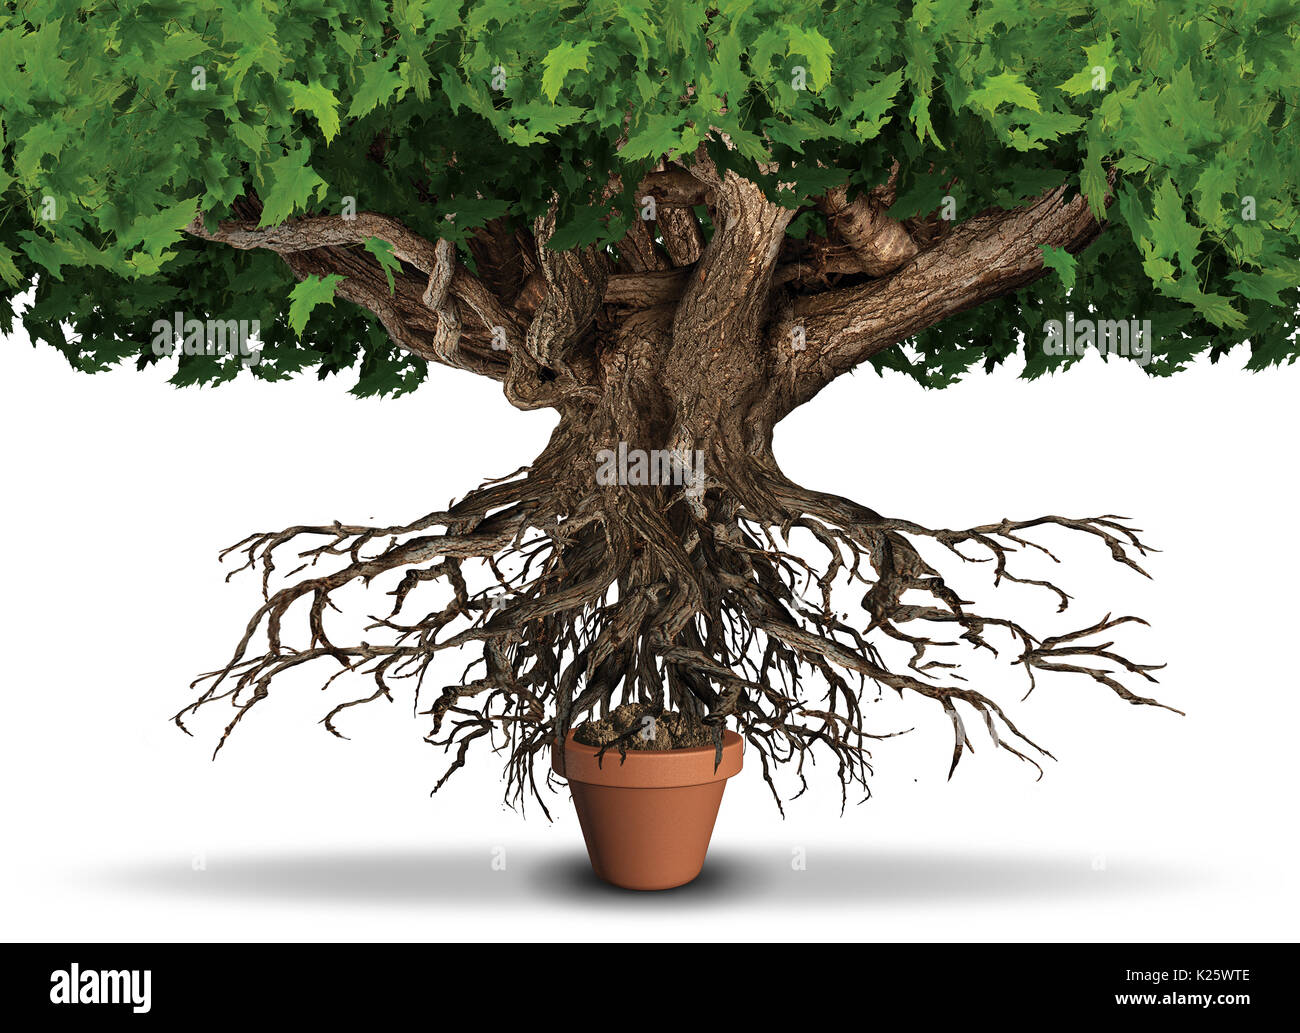 Recursos limitados negocios y economía concepto como un árbol gigante y raíces tratando de obtener los nutrientes de una planta pequeña olla, como una metáfora de la escasez. Foto de stock